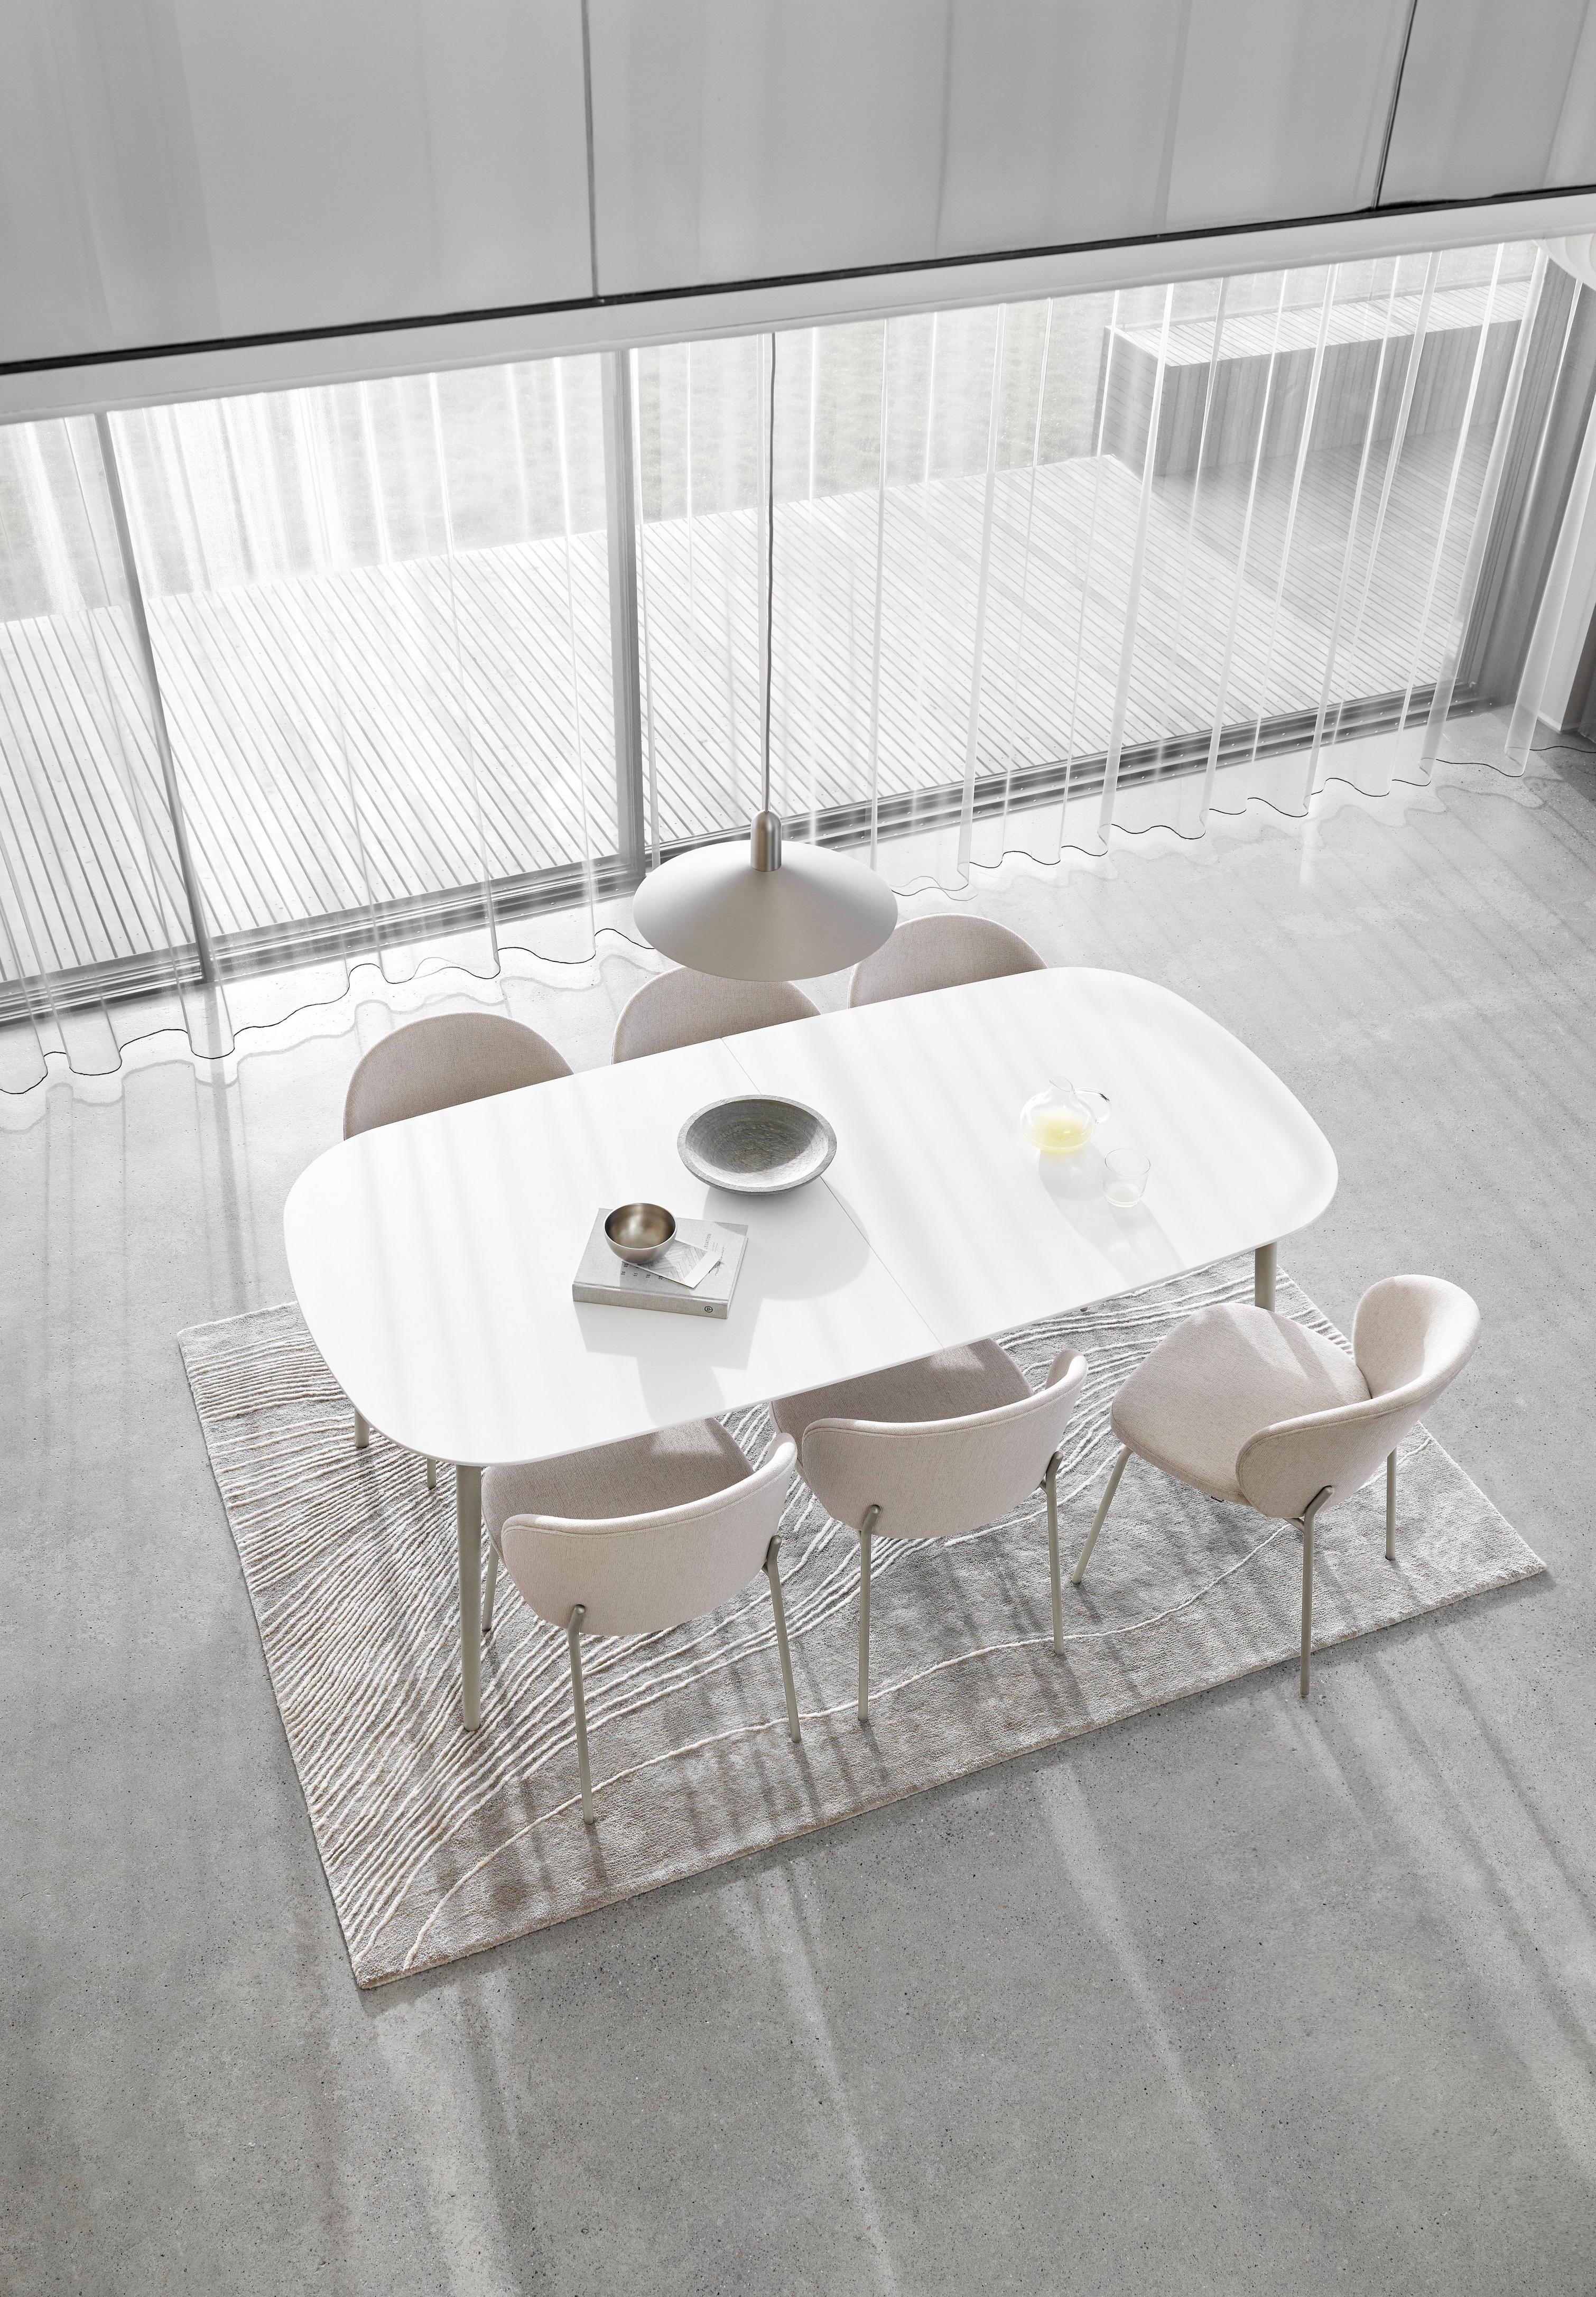 Sala de jantar minimalista com mesa oval branca, cadeiras, cortinas transparentes e tapete texturizado.